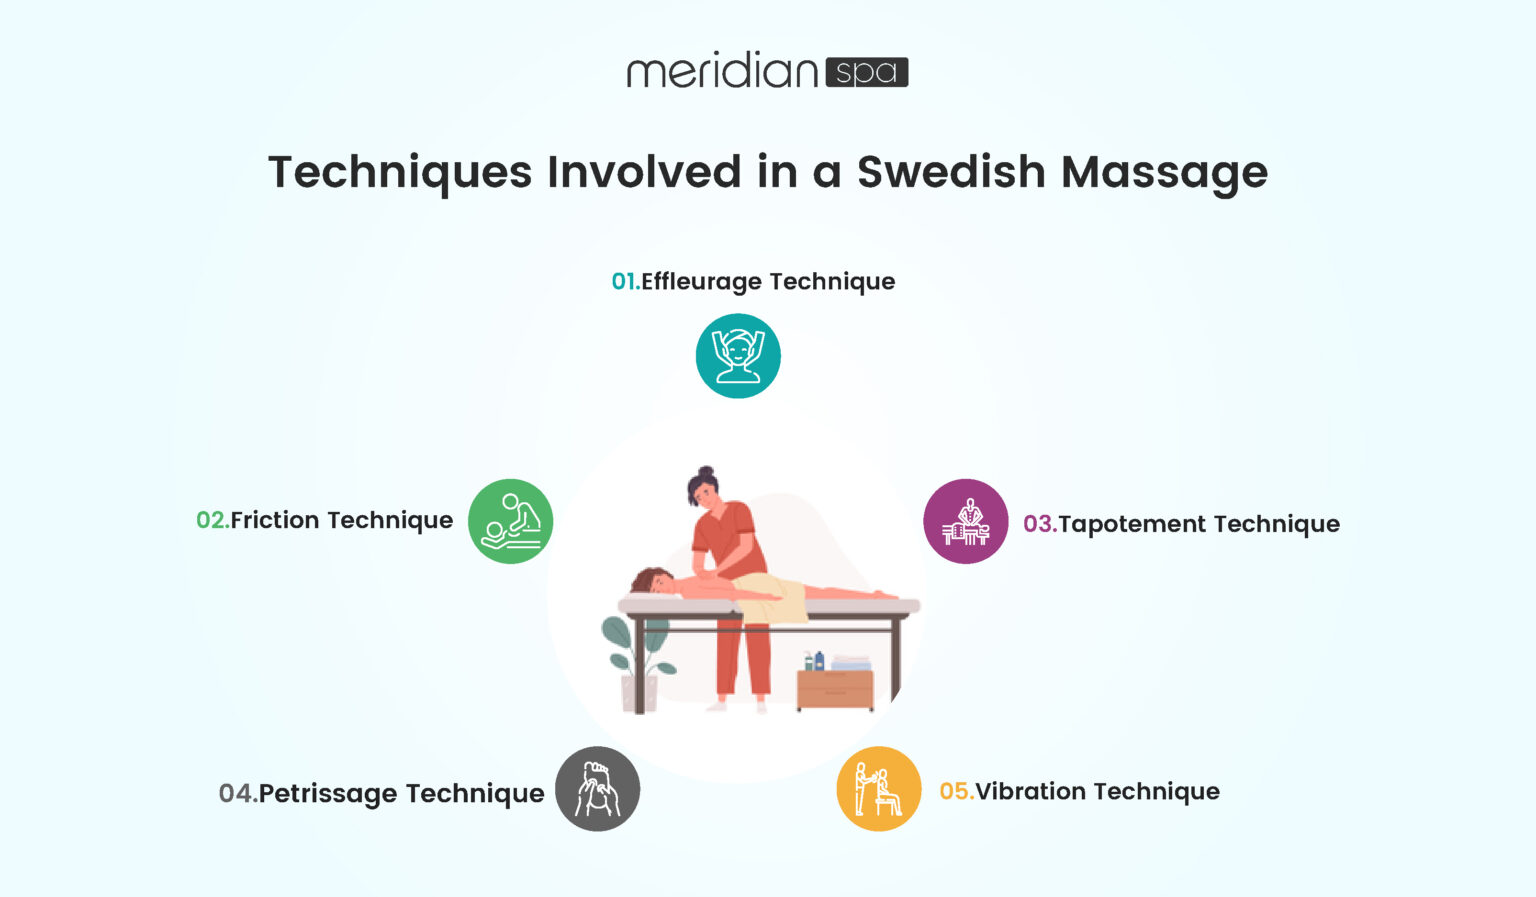 langkah langkah swedish massage